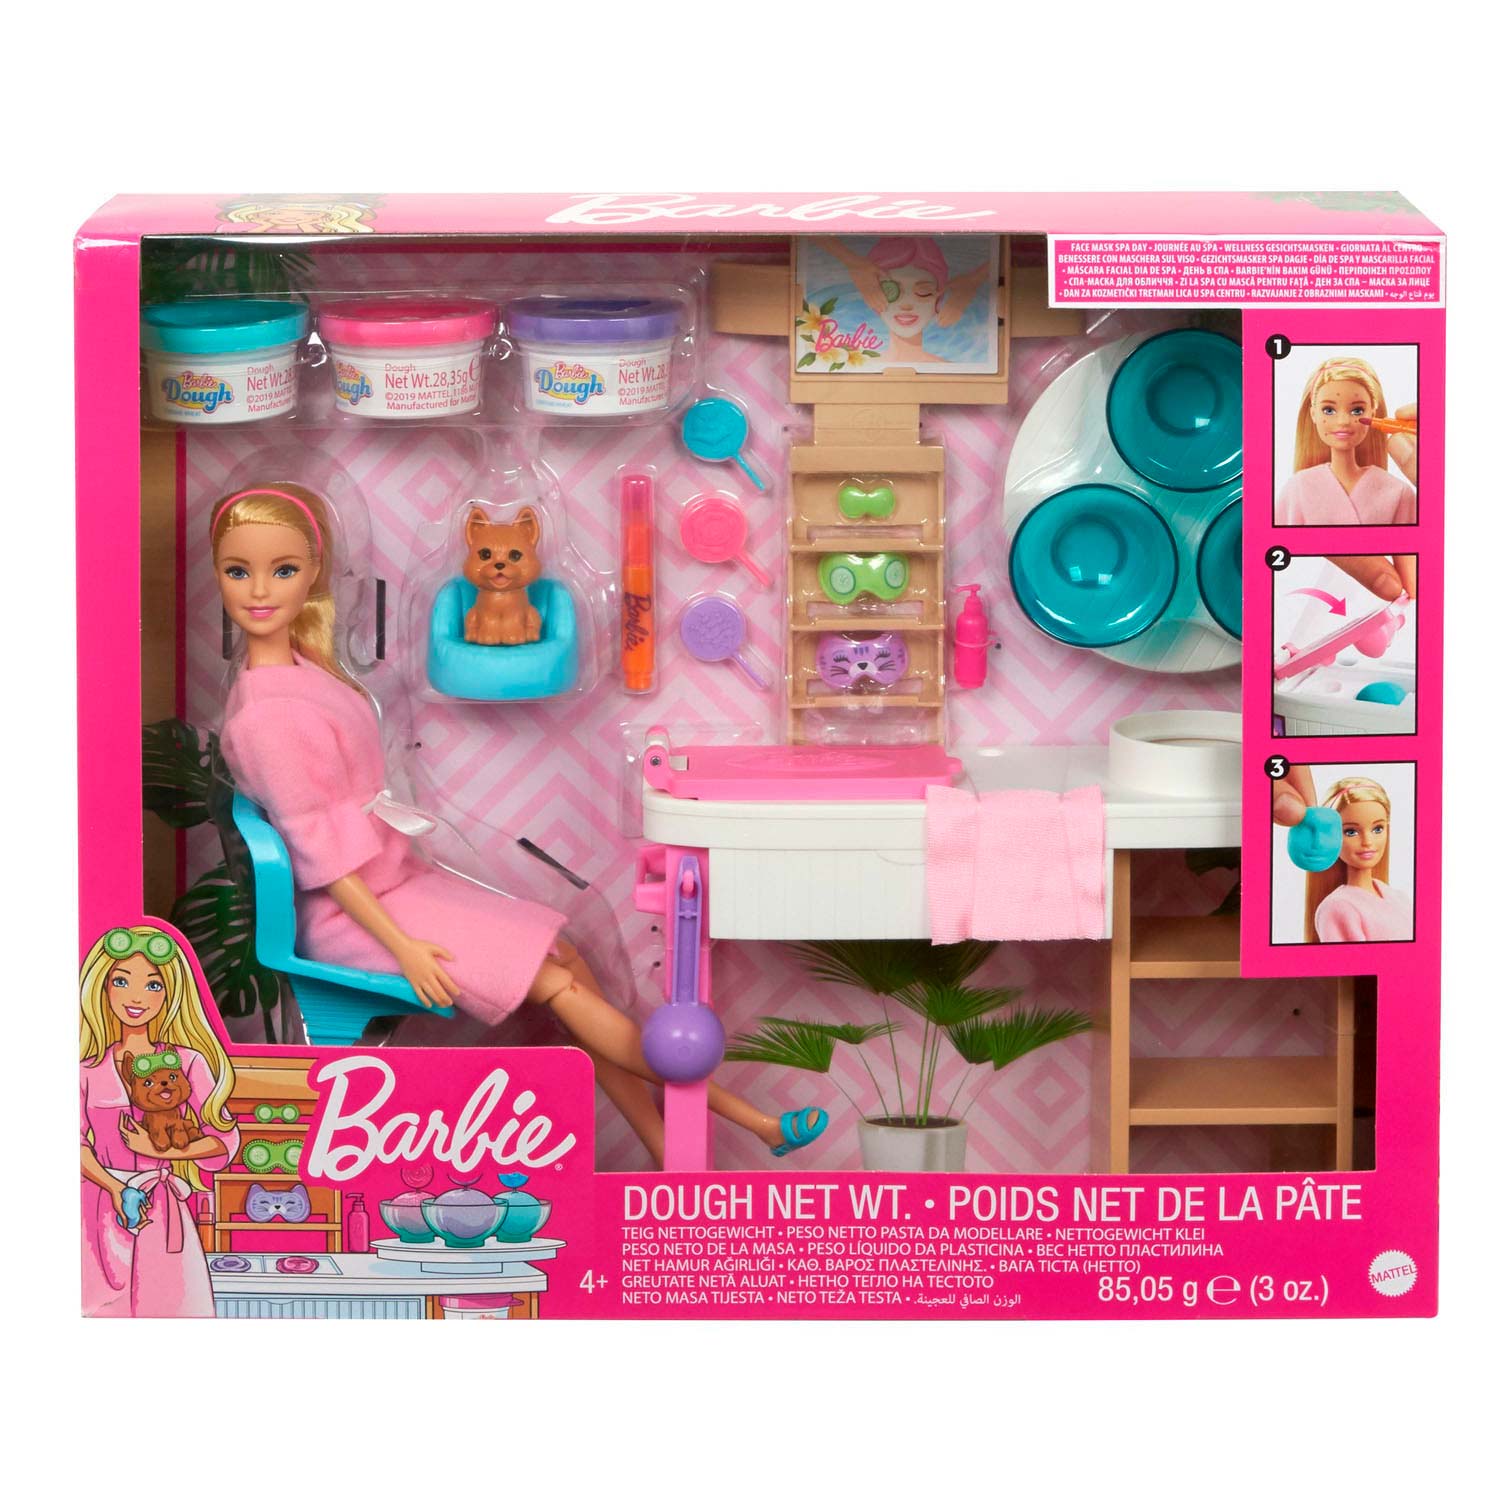 Mattel Barbie Salón krásy herní set s běloškou